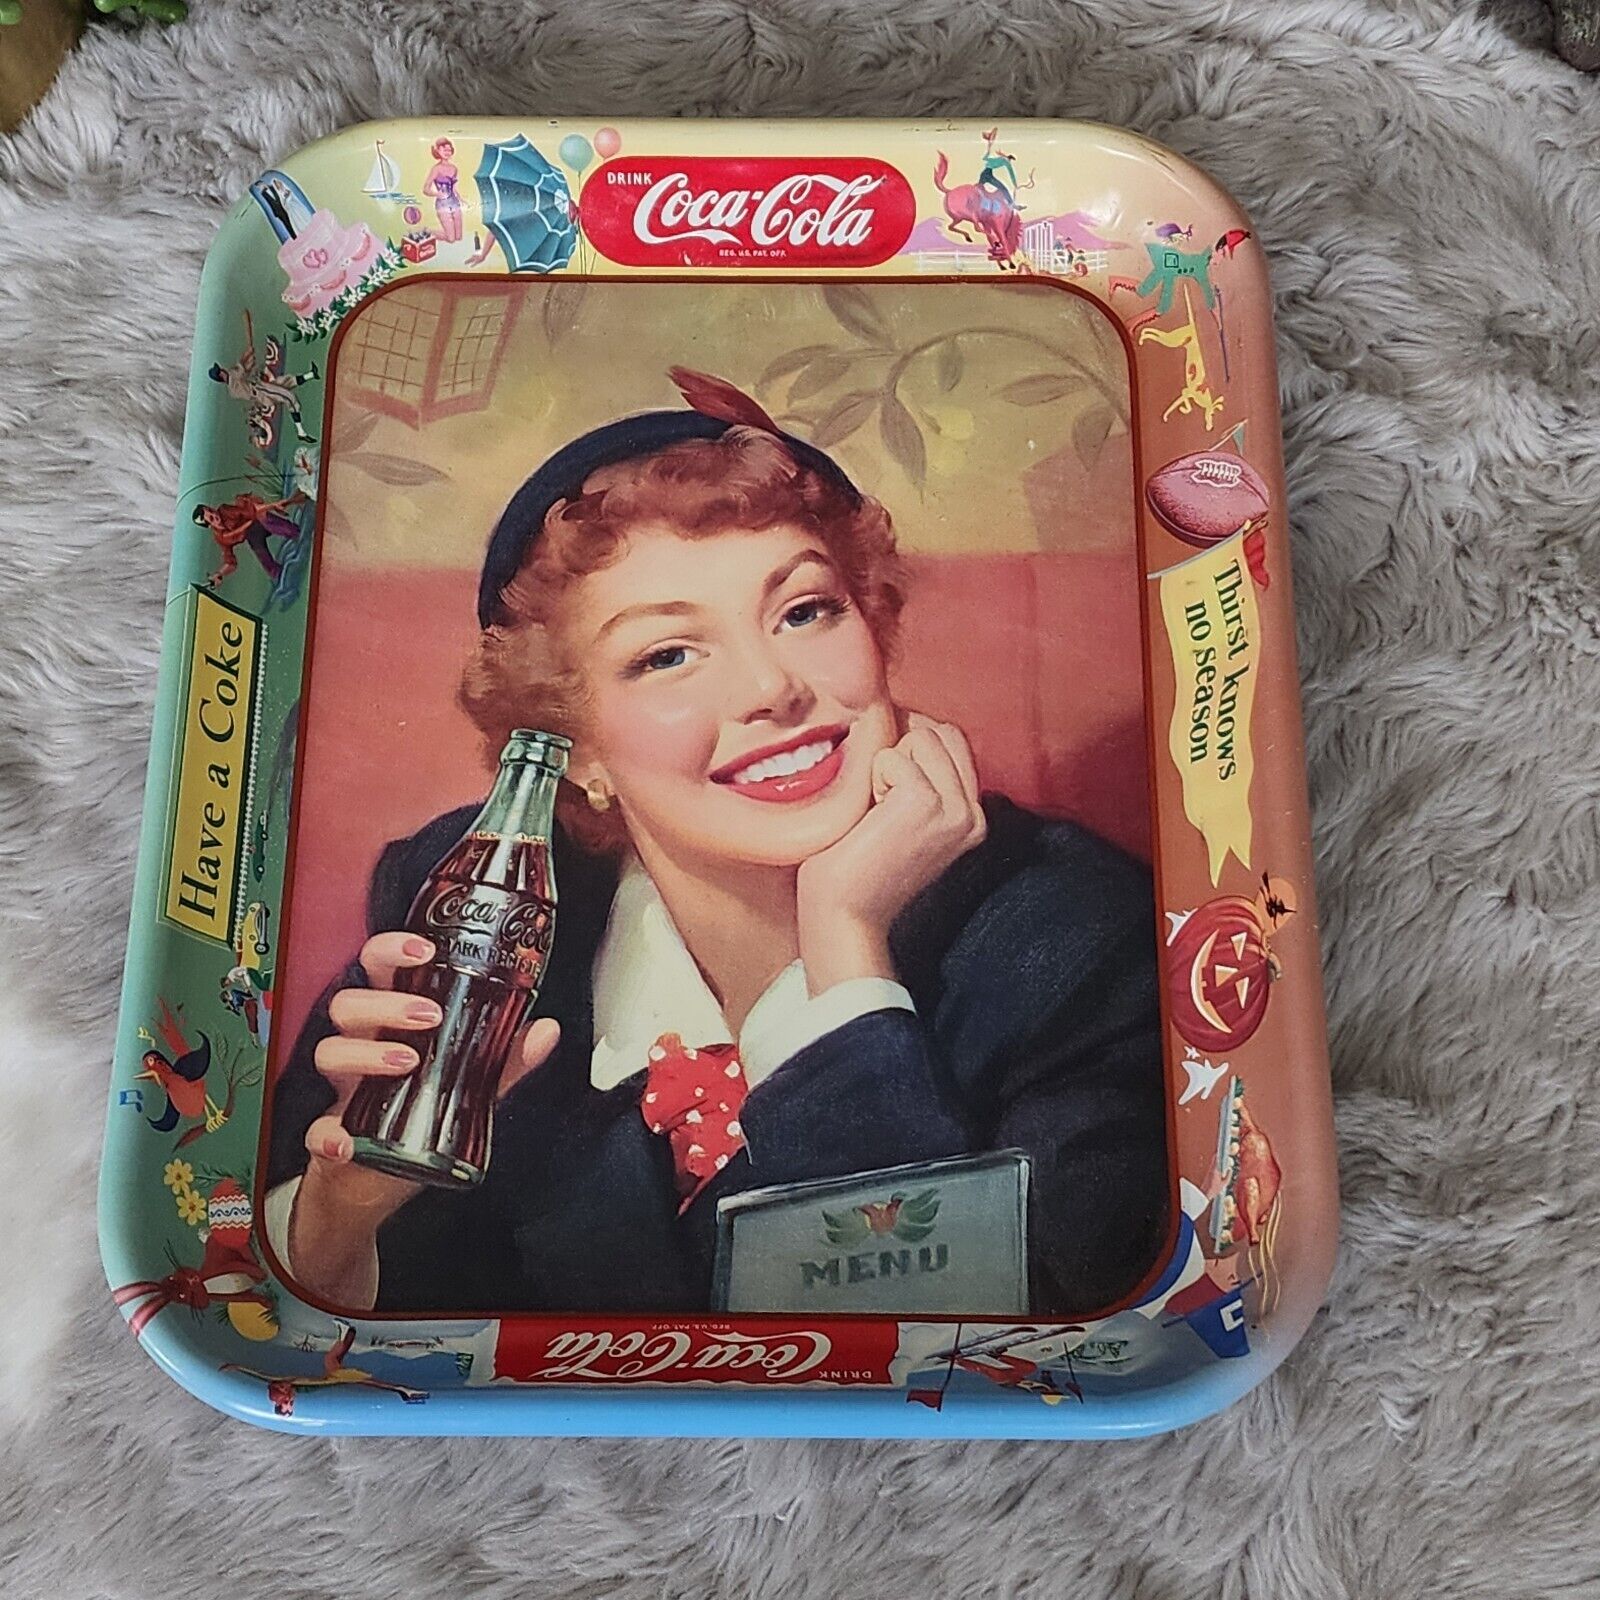 Original 1940’s 13.5in Coca-Cola Advertising Tray